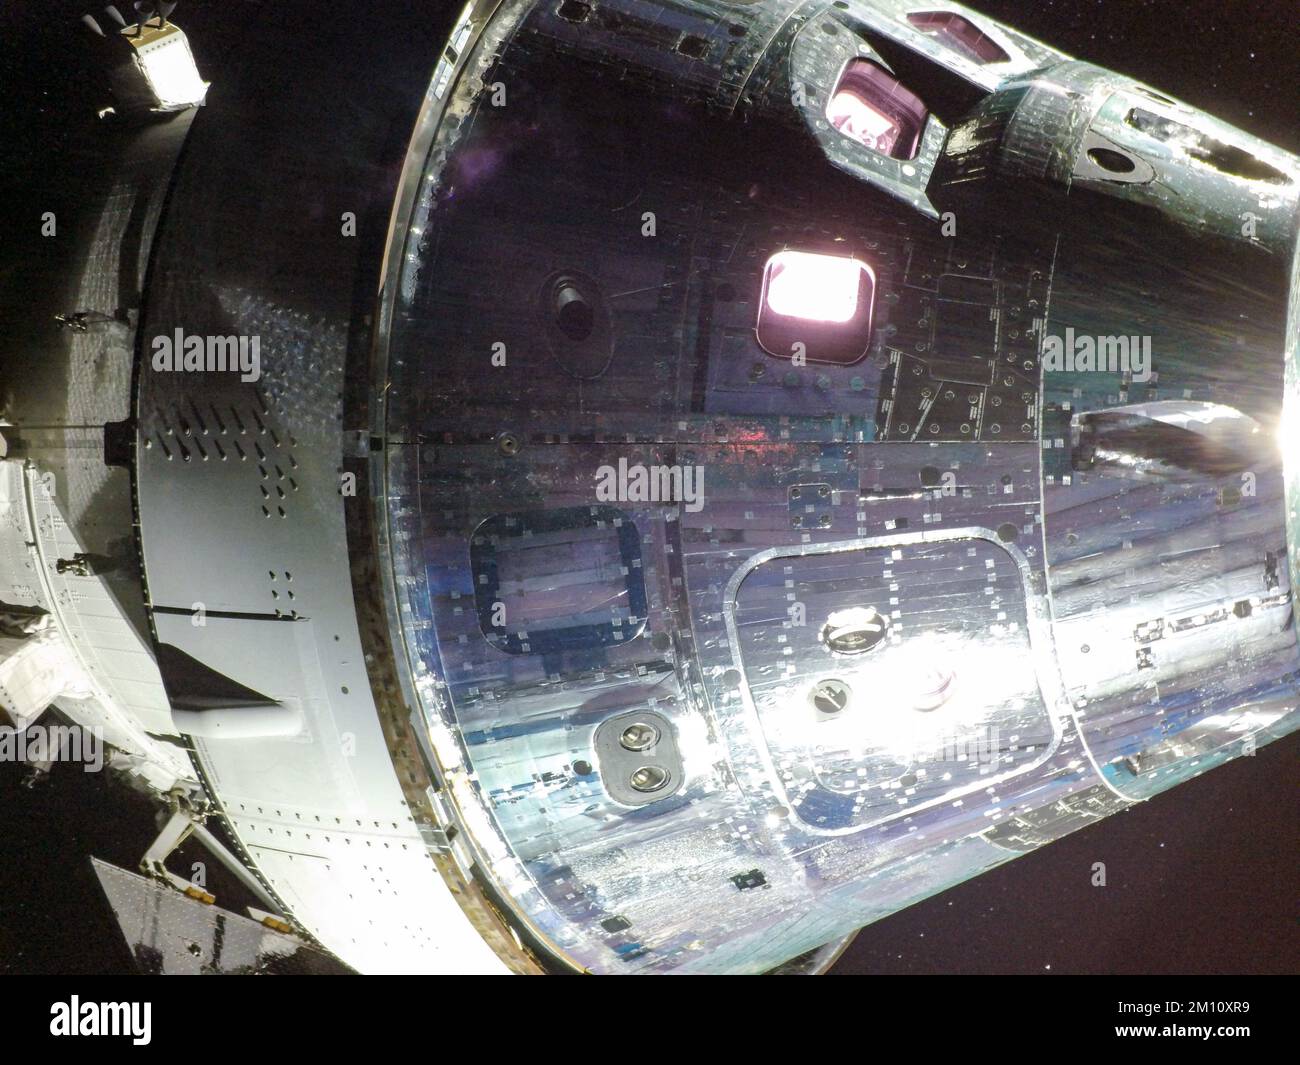 TERRA, LA LUNA - 05 dicembre 2022 - il giorno di volo 20 della missione Artemis i, la capsula di Orion il giorno del ritorno alimentato flyby della Luna. Foto Stock